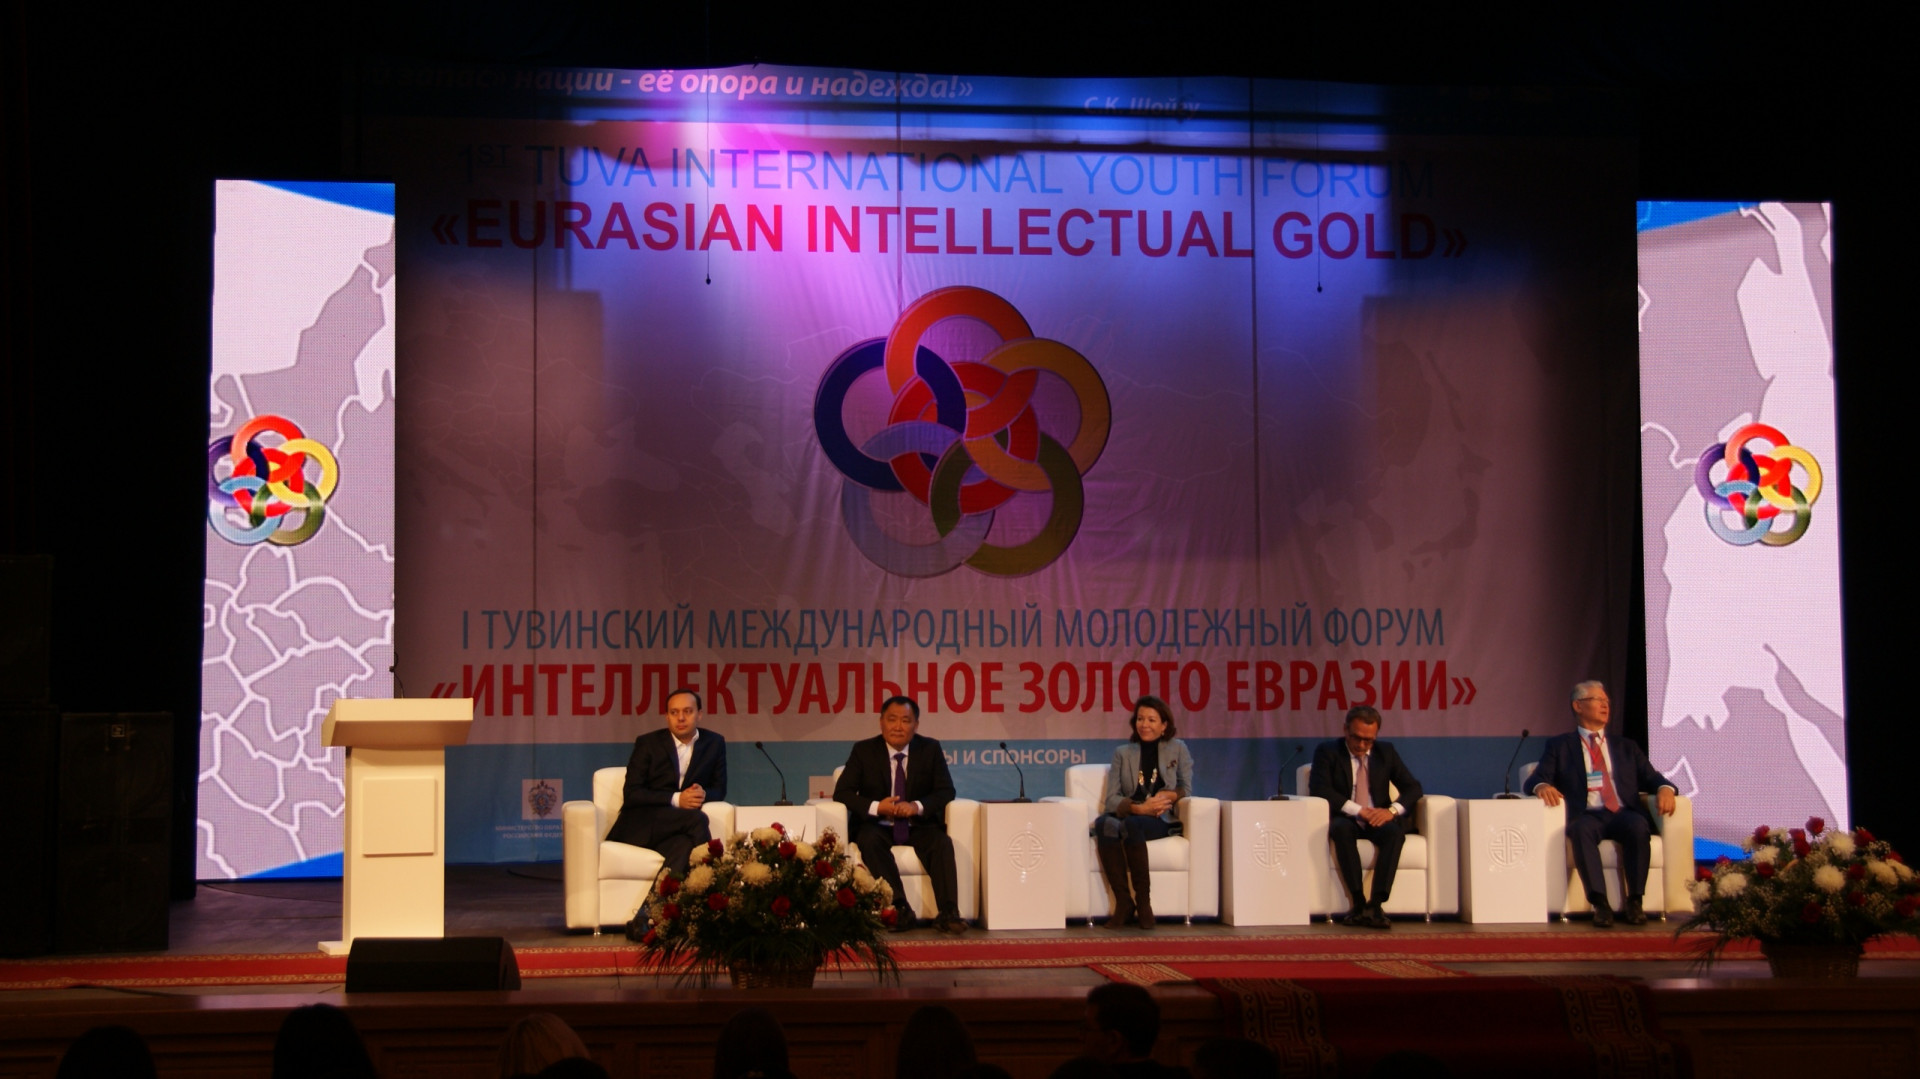 I Тувинский форум "Интеллектуальное золото Евразии"